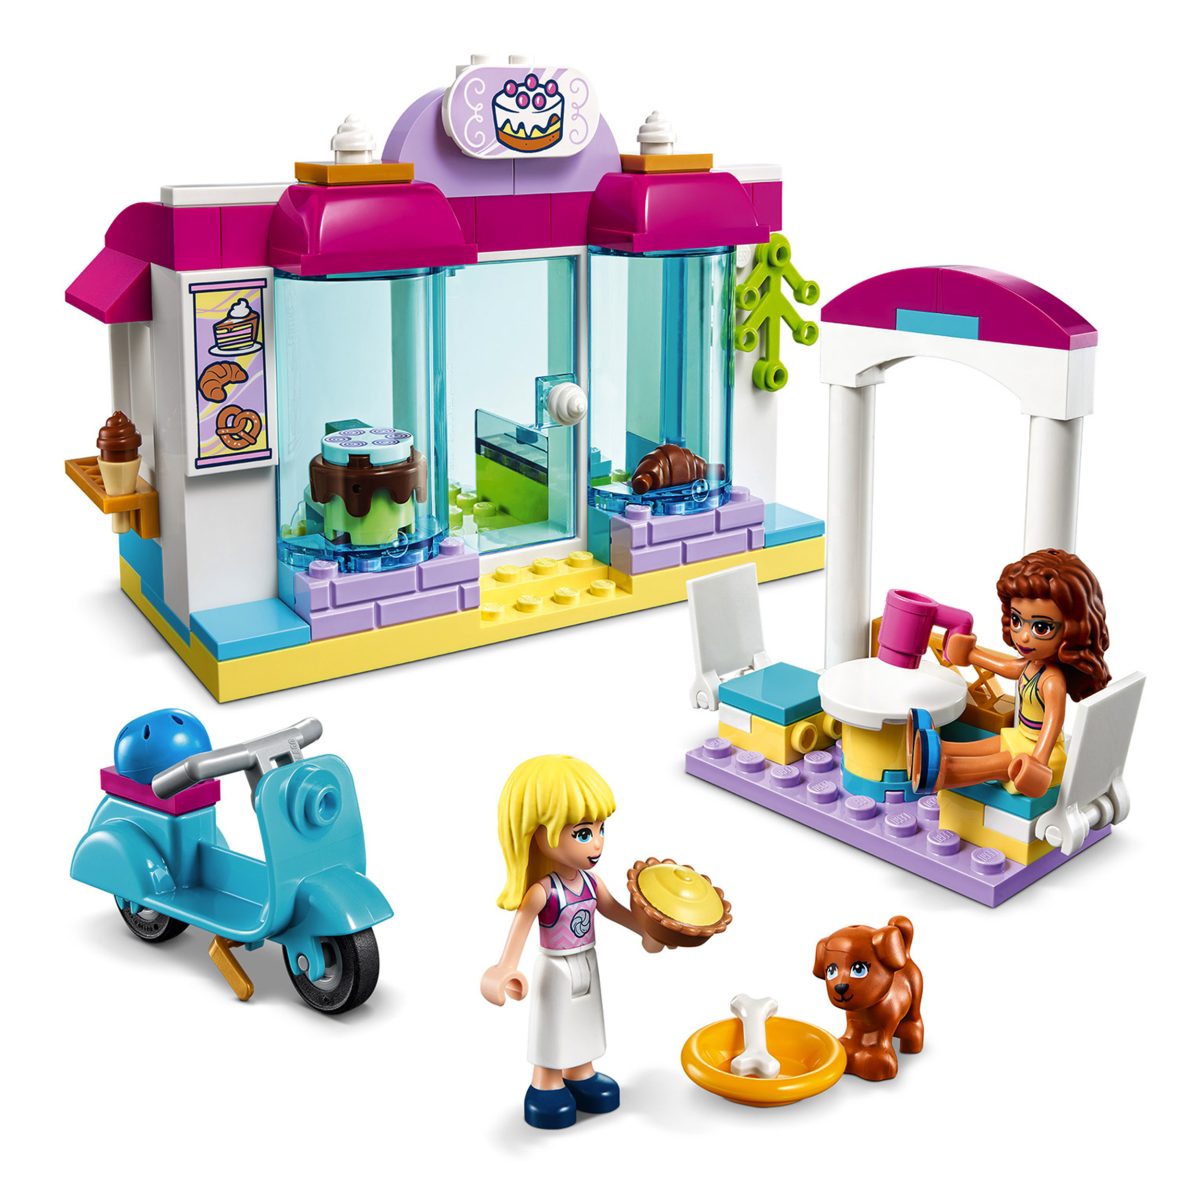 LEGO-friends-41440-La-boulangerie-de-Heartlake-City-feature1